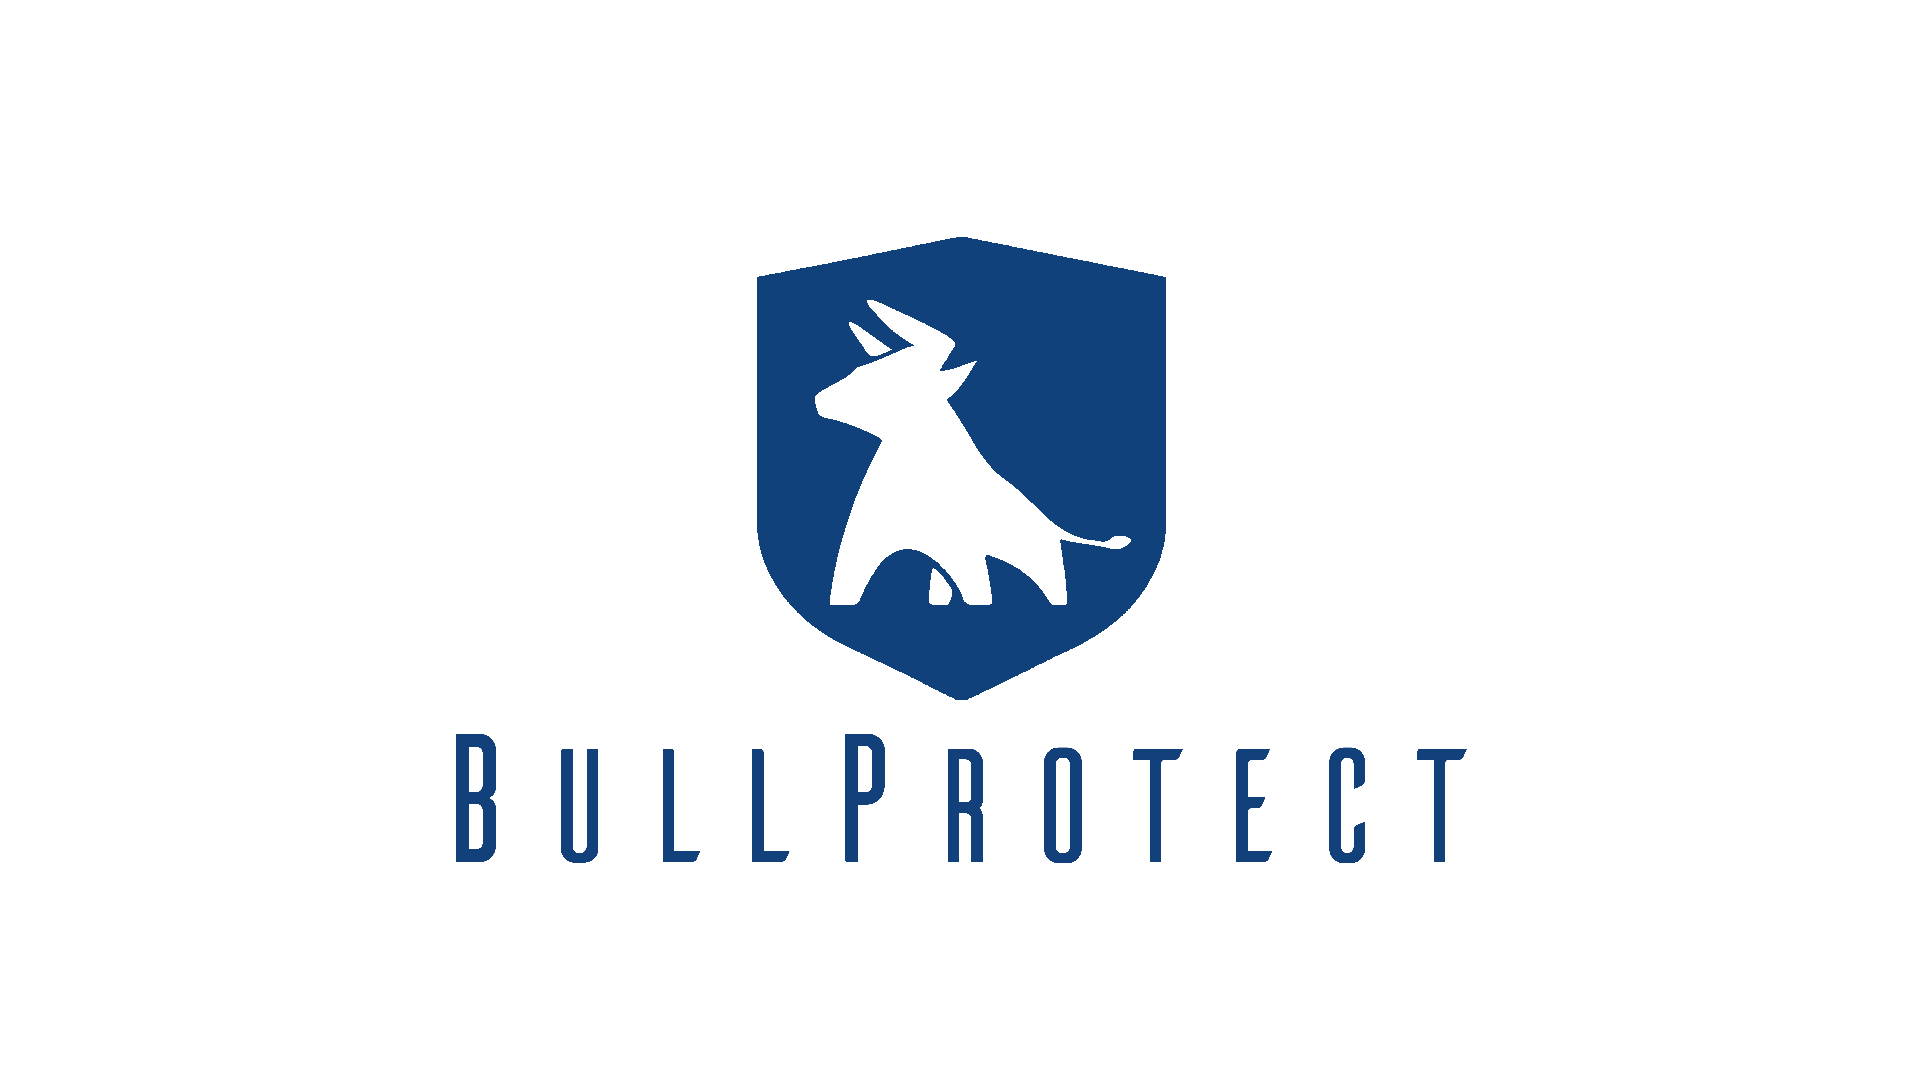 BullProtect